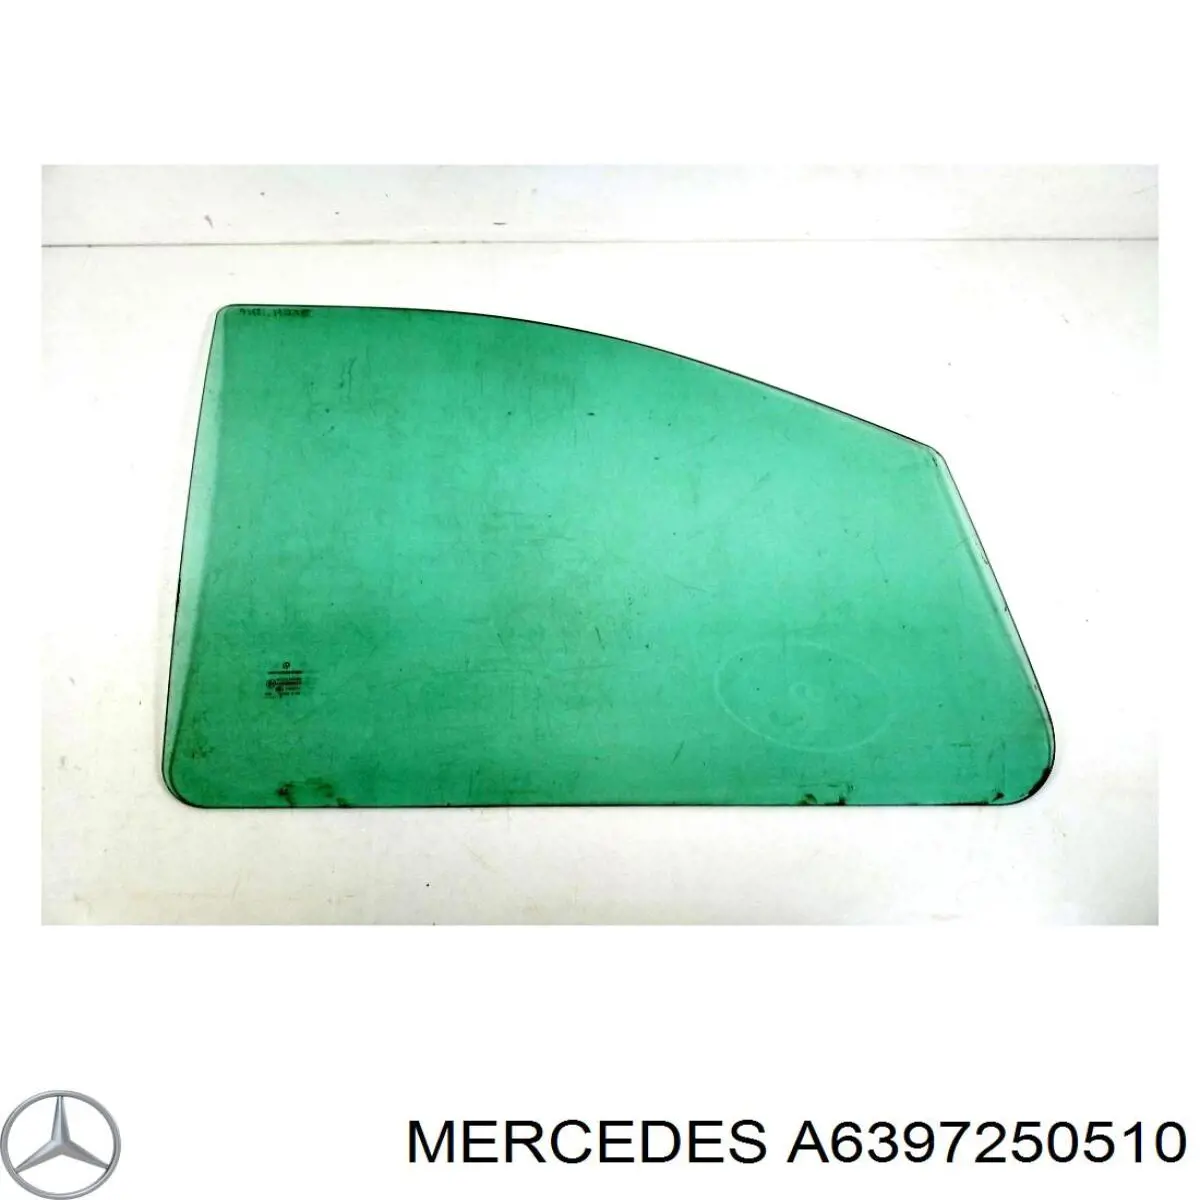 Стекло пассажирской двери на Mercedes Viano (W639)